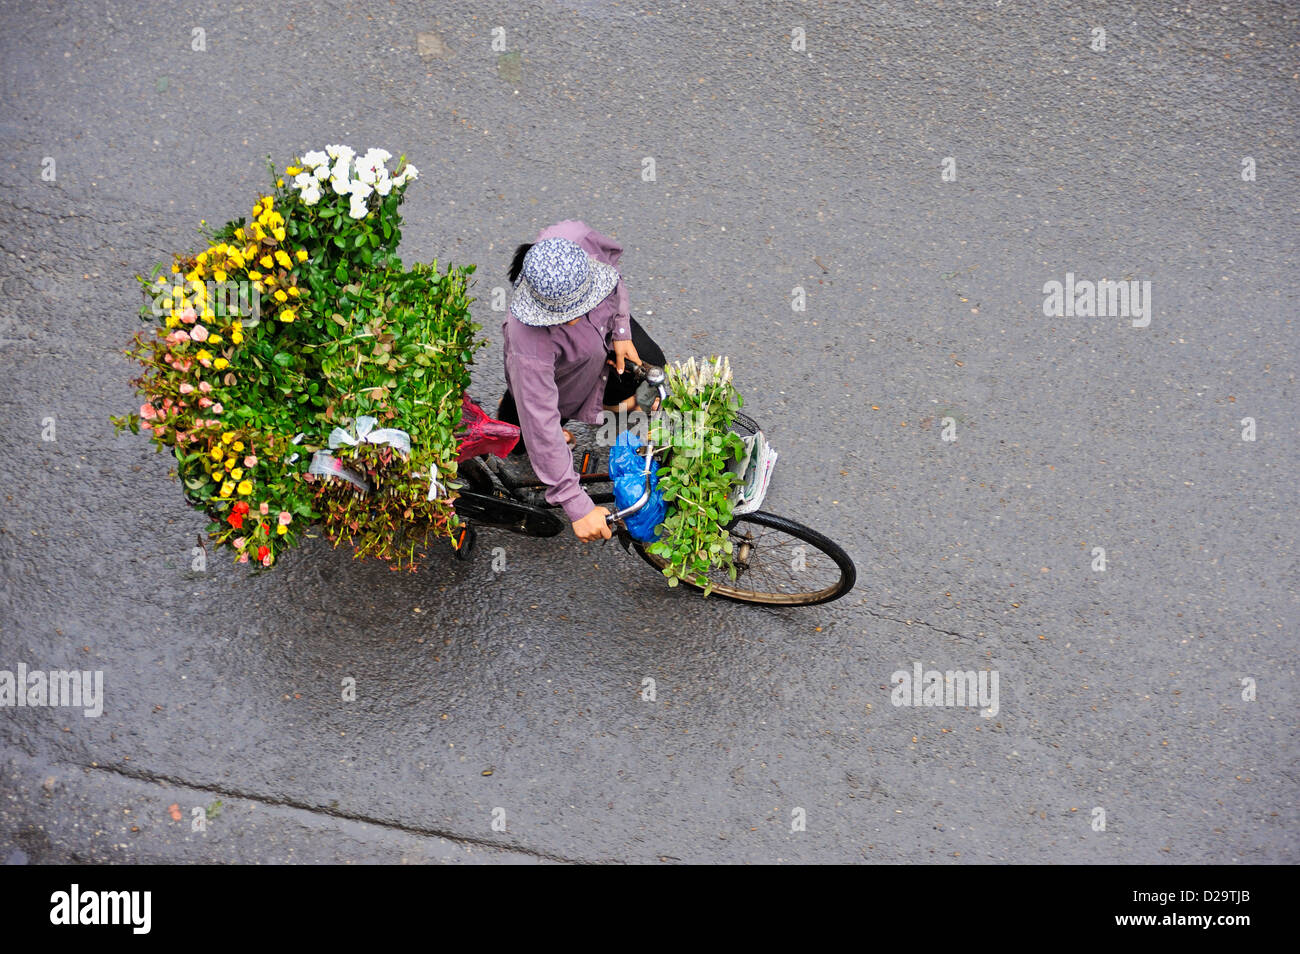 Hanoi, Vietnam - Flower seller Stock Photo